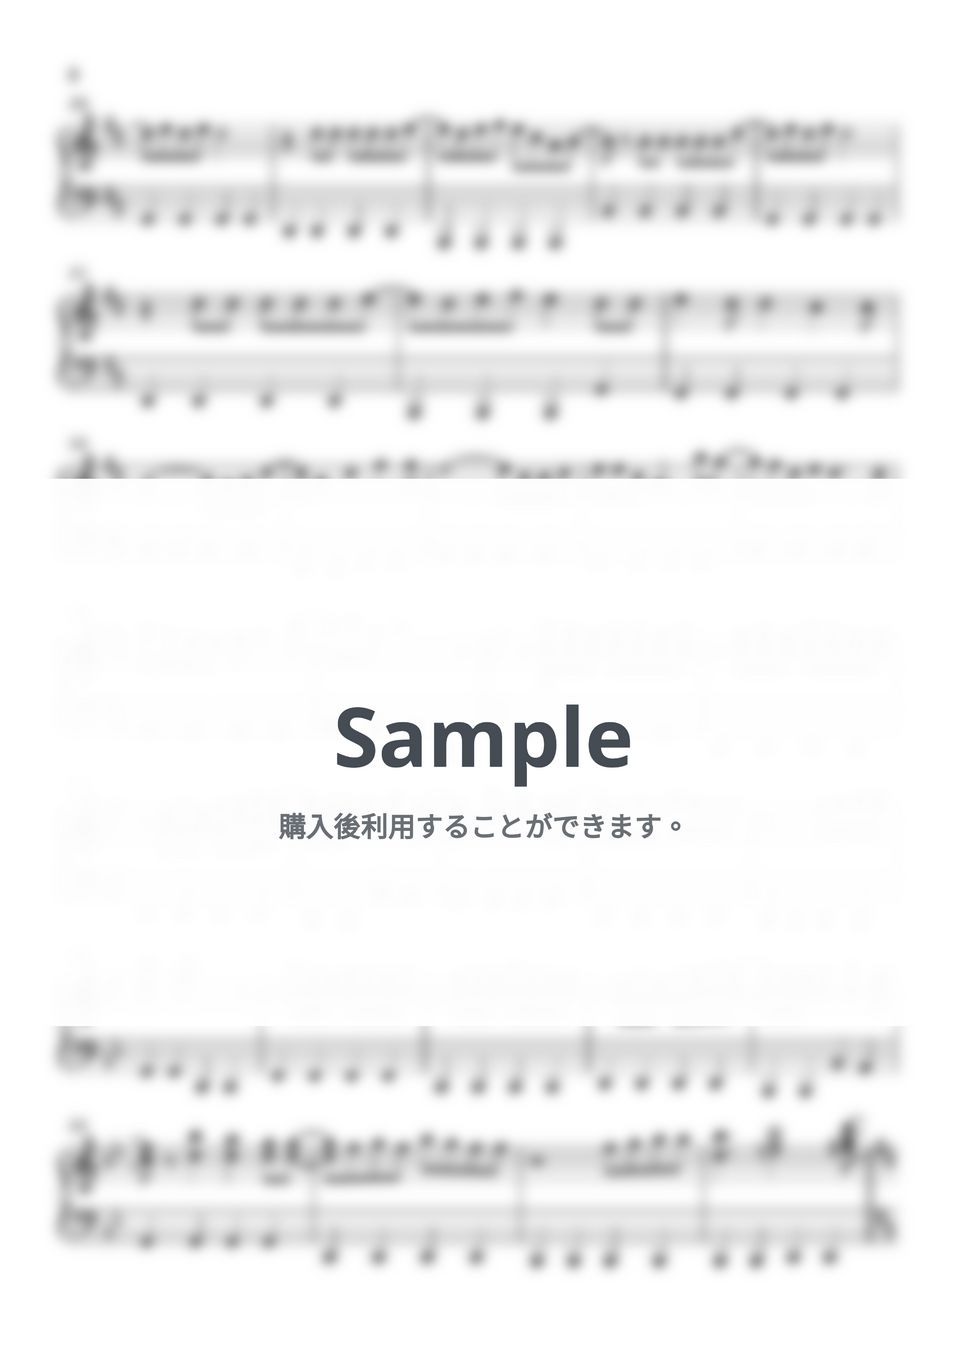 Folder5 - Believe (ワンピース / ピアノ楽譜 / 初級) by Piano Lovers. jp